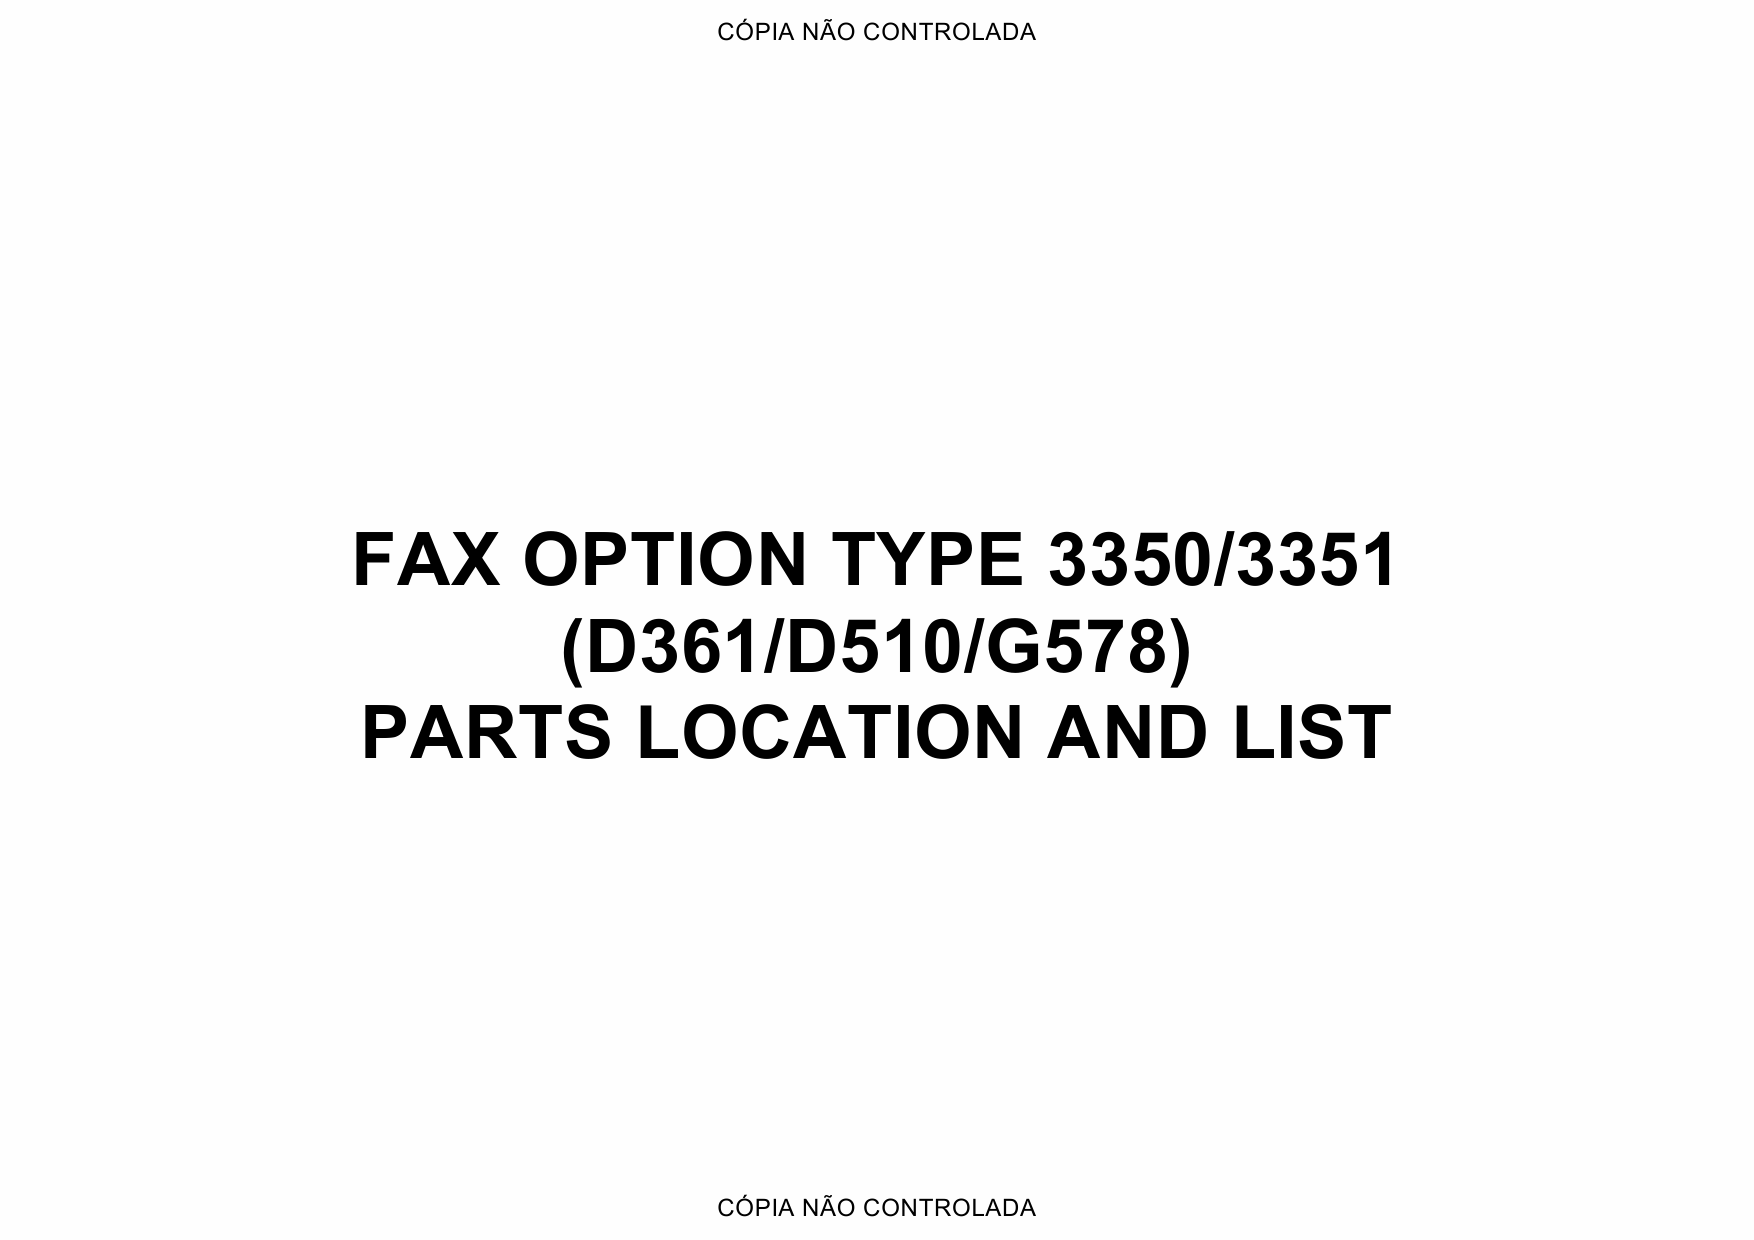 RICOH Options D361 D510 G578 FAX-OPTION-TYPE-3350-3351 Parts Catalog PDF download-1